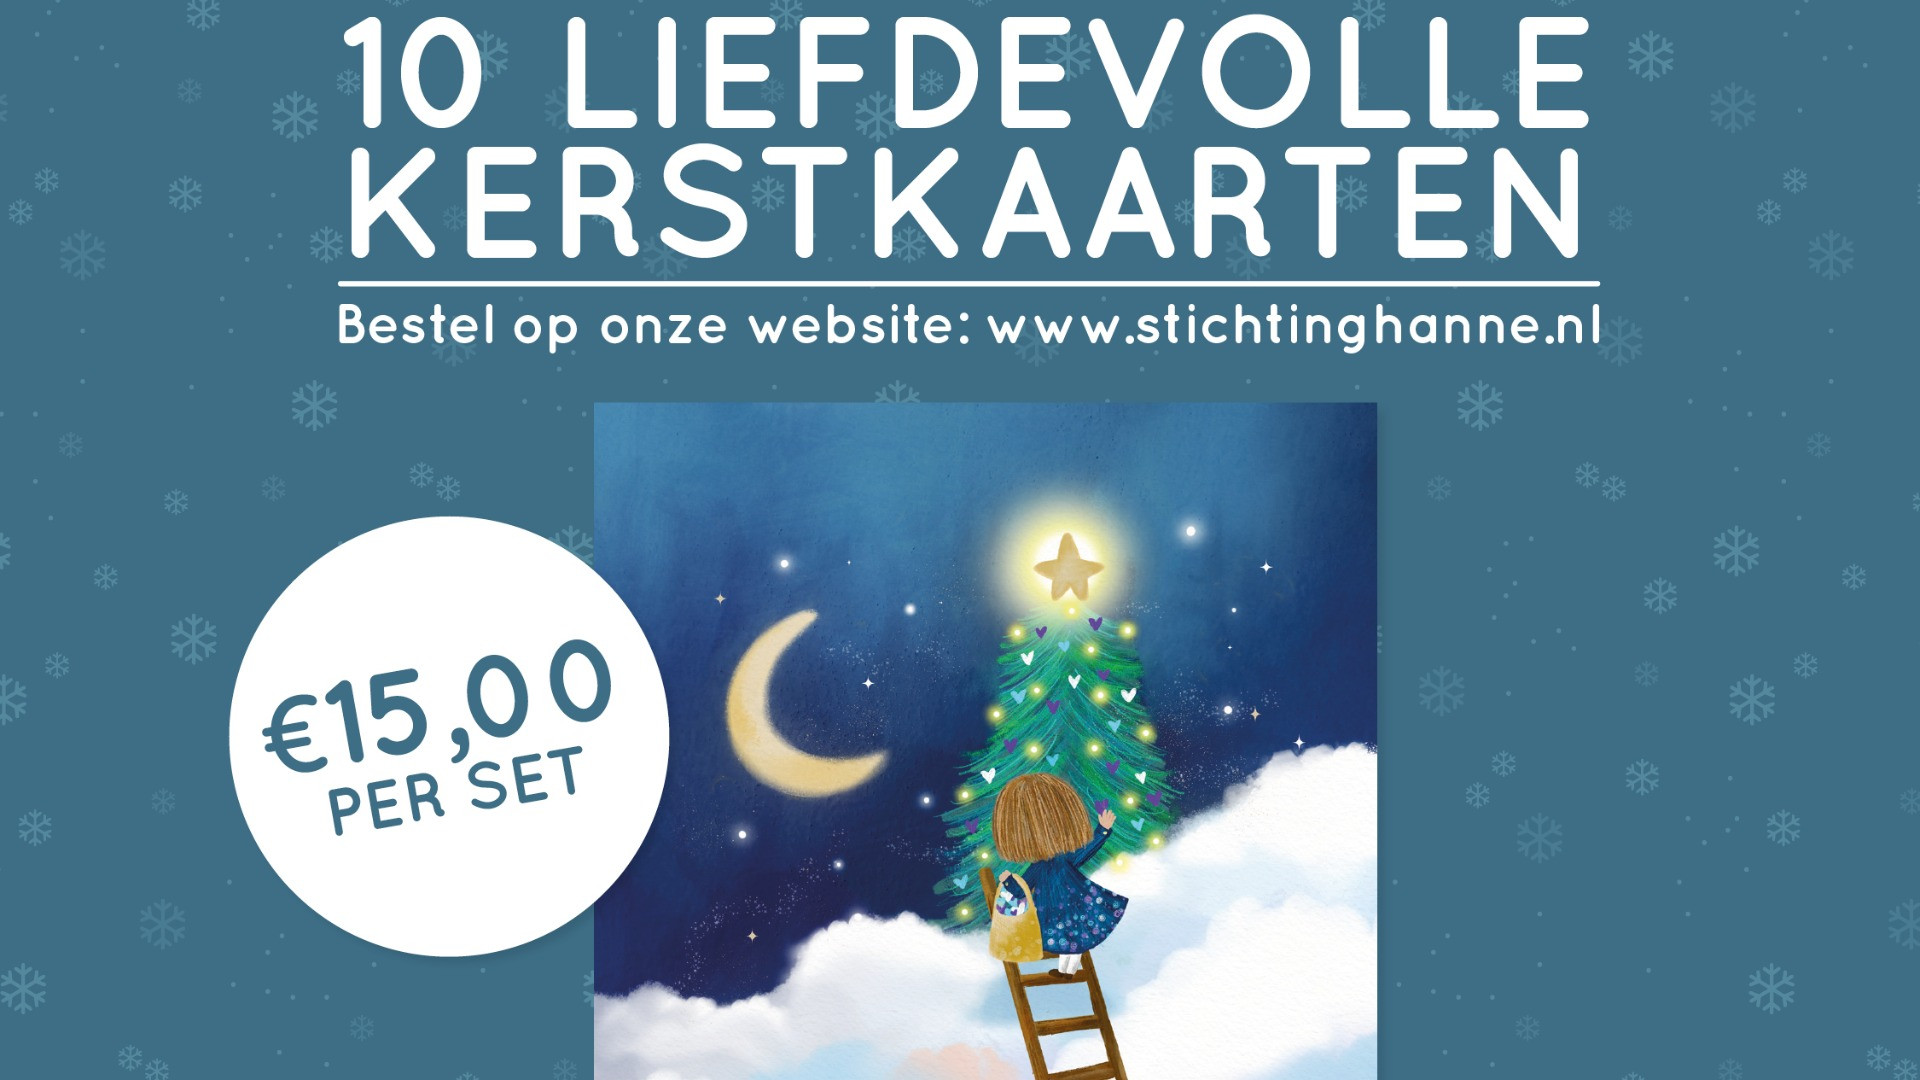 Stichting Hanne_kerstkaarten sale_social_uitwerking-202224